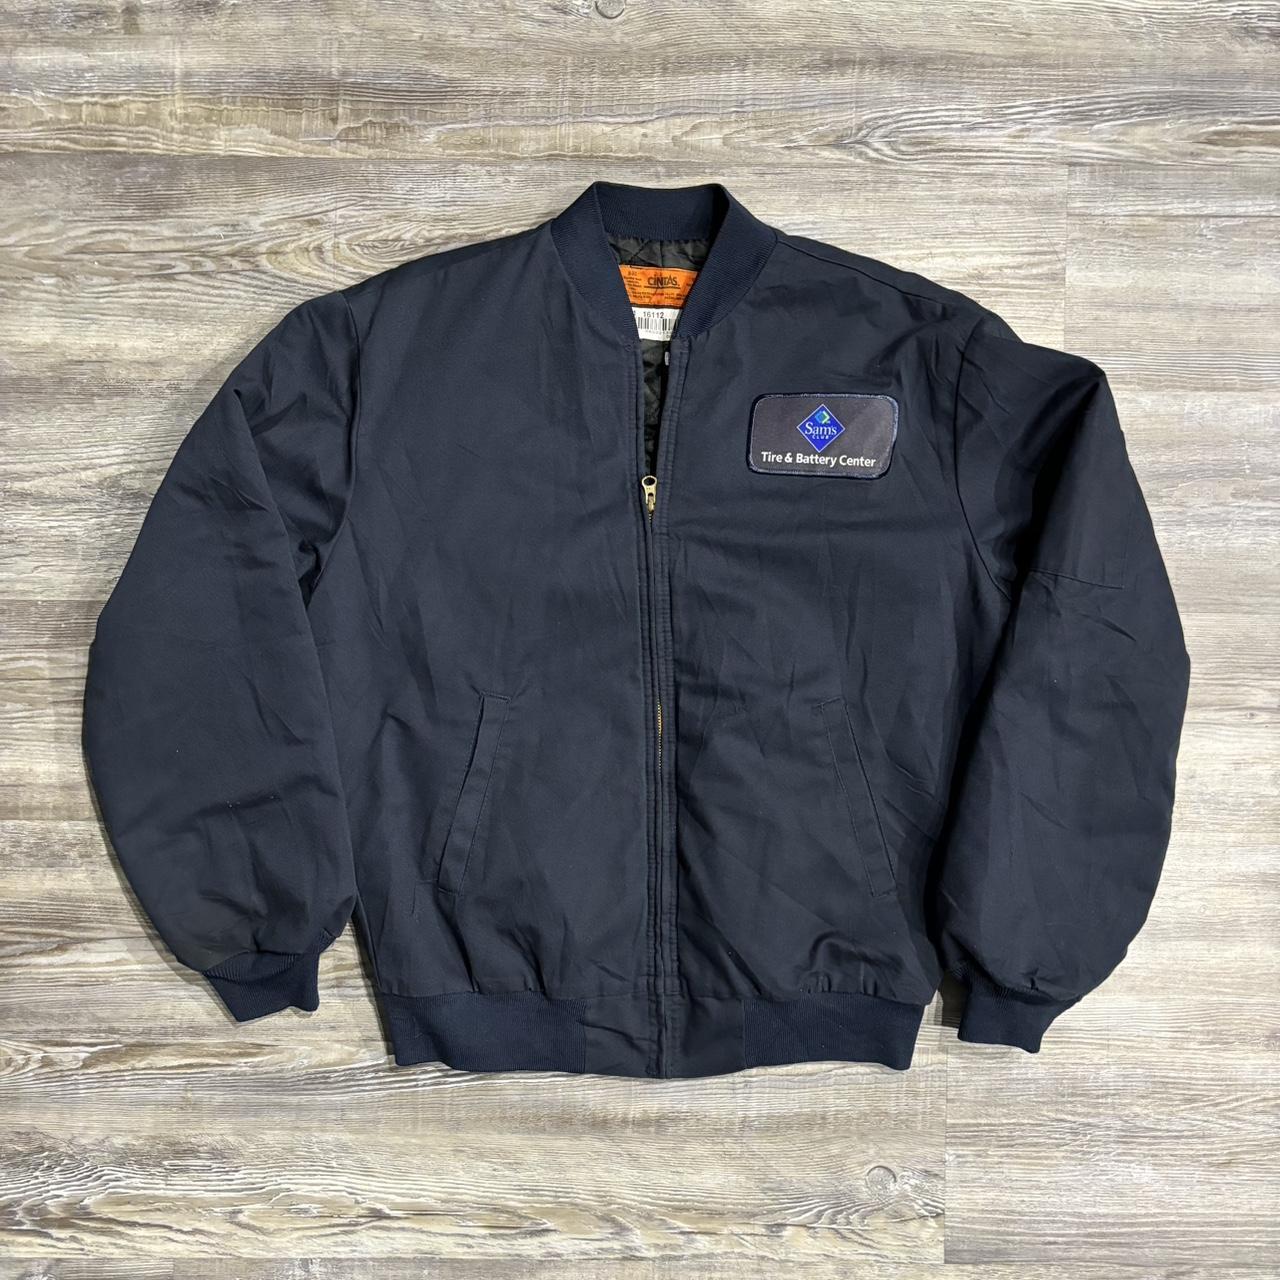 Cintas Jacket Navy Blue #workjacket #vintage... - Depop